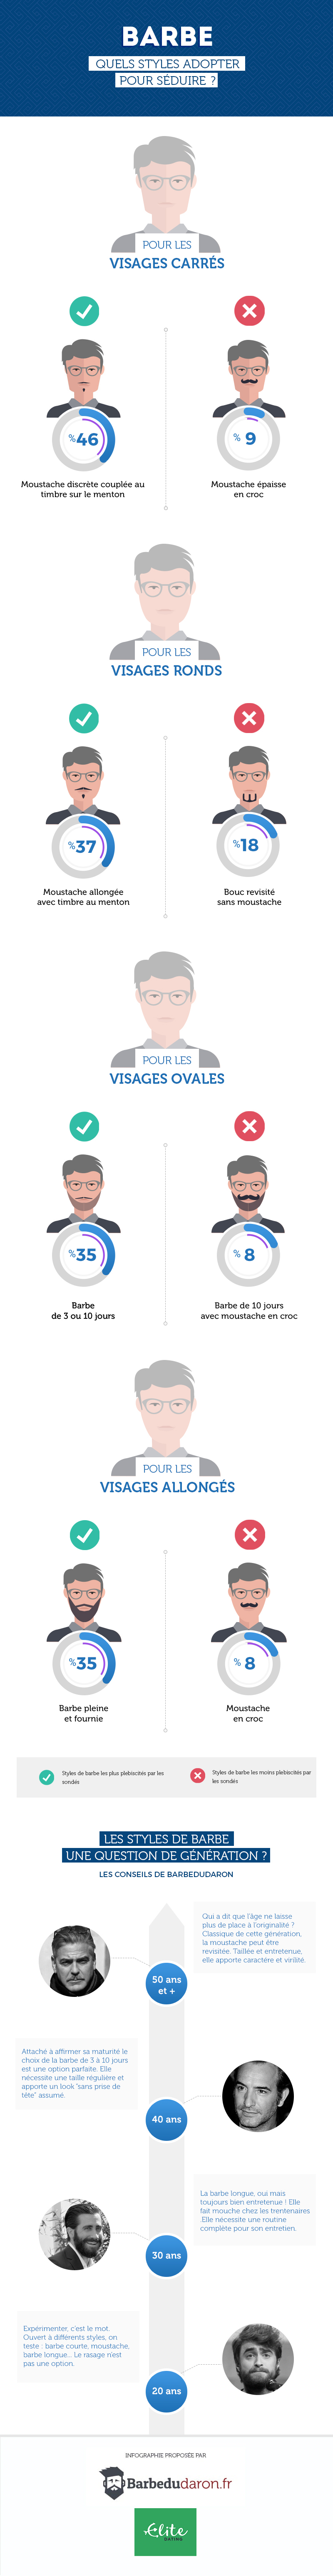 infographie styles de barbe - journée de la barbe 2017